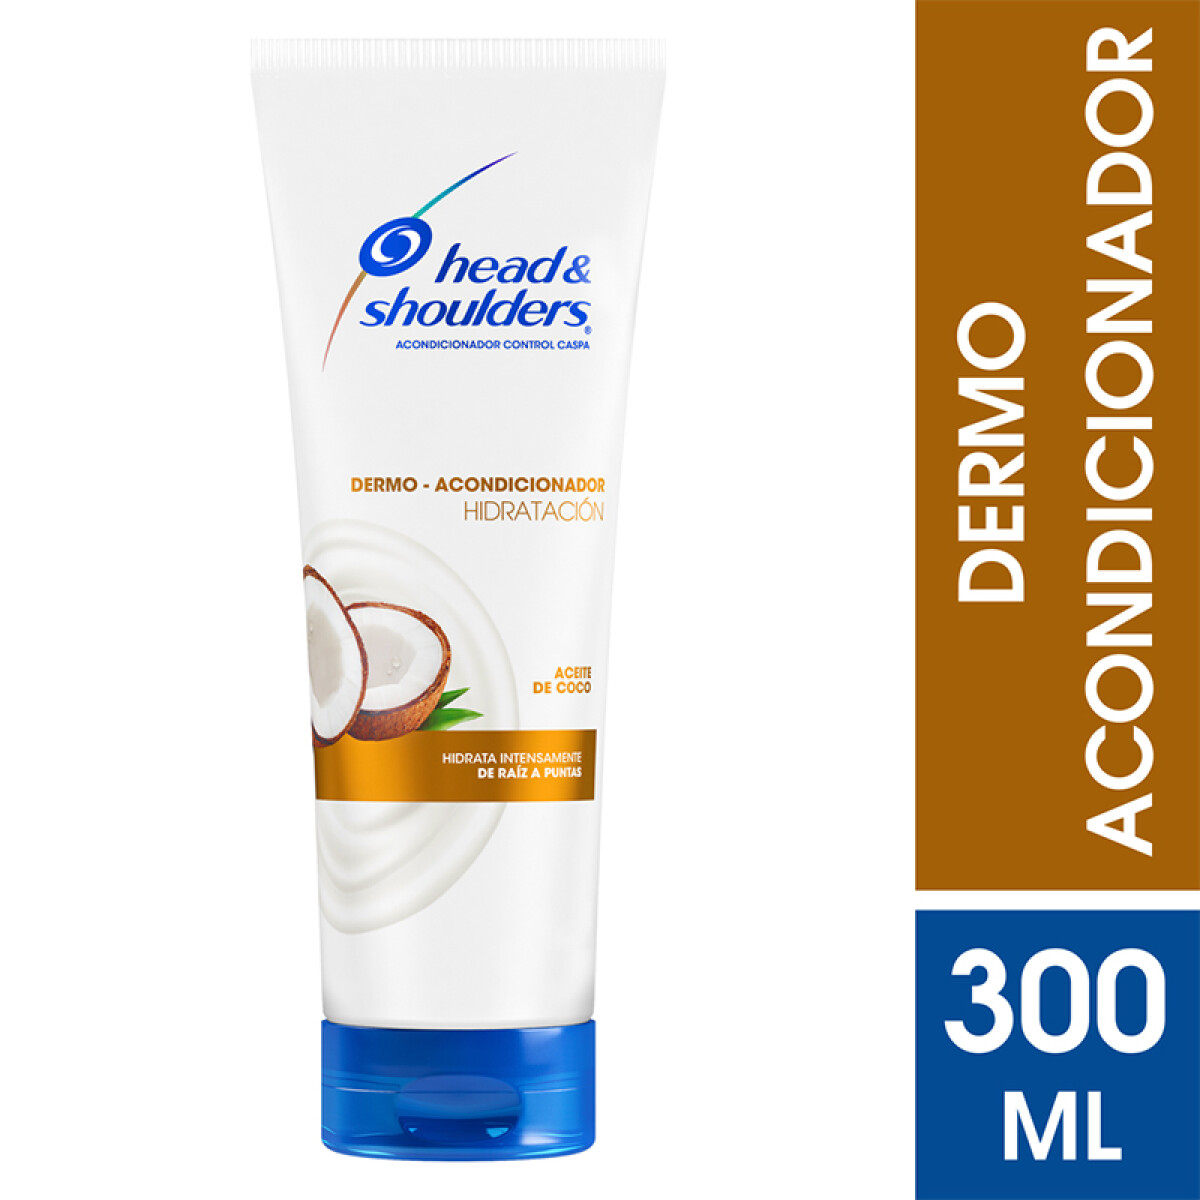 Head & Shoulders Dermo Acondicionador 300 ml - Hidratación Aceite de Coco 